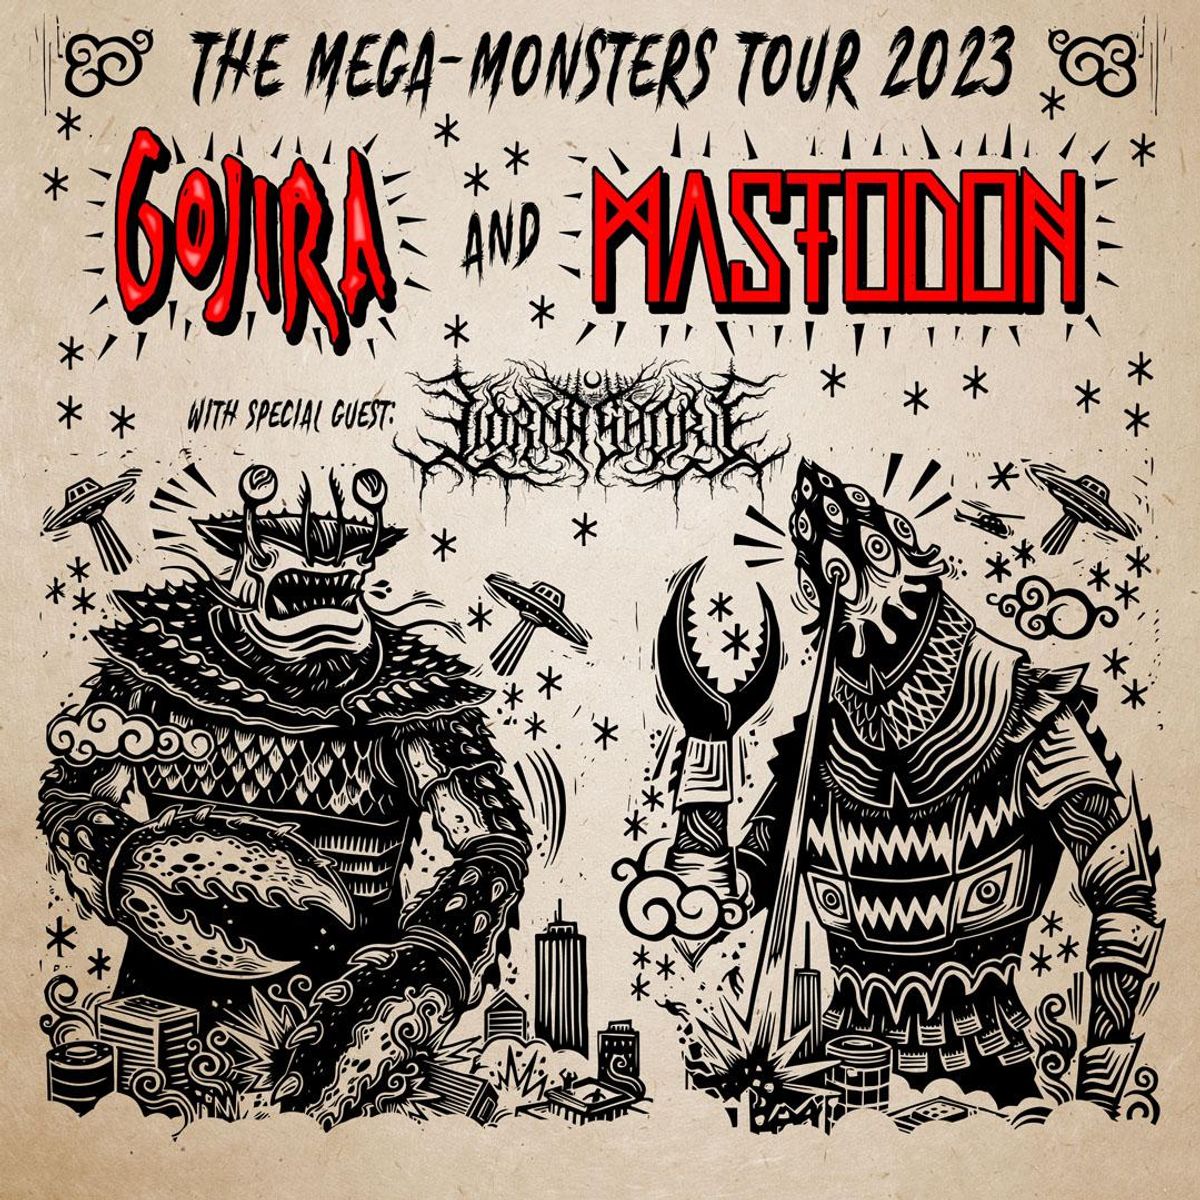 Mastodon and Gojira Announce 2023 Tour